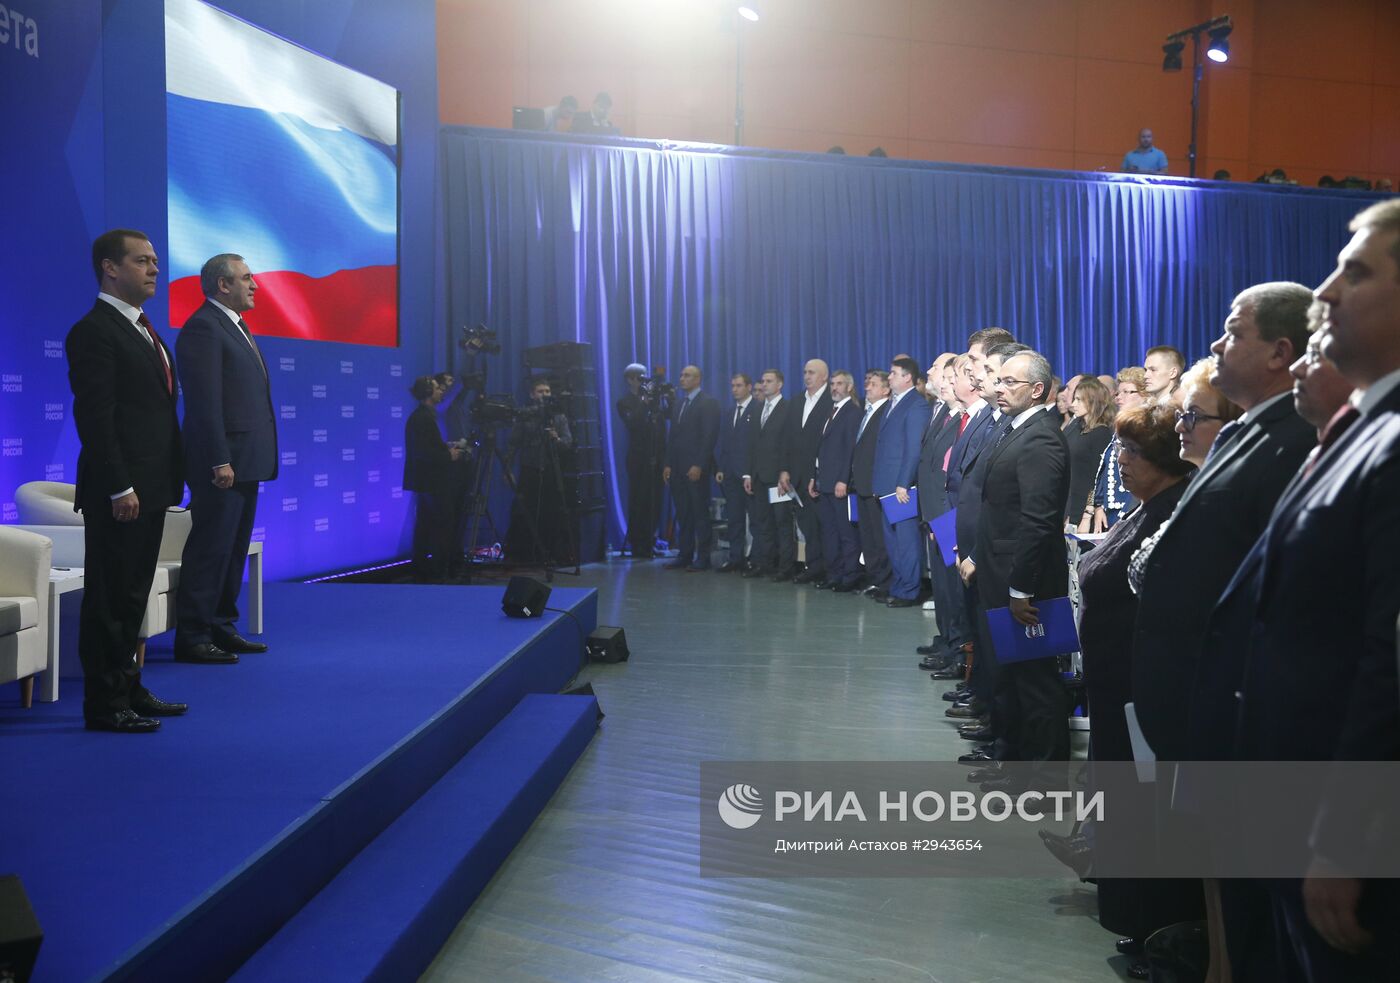 Премьер-министр РФ Д. Медведев принял участие в совместном заседании высшего совета и генерального совета "Единой России"